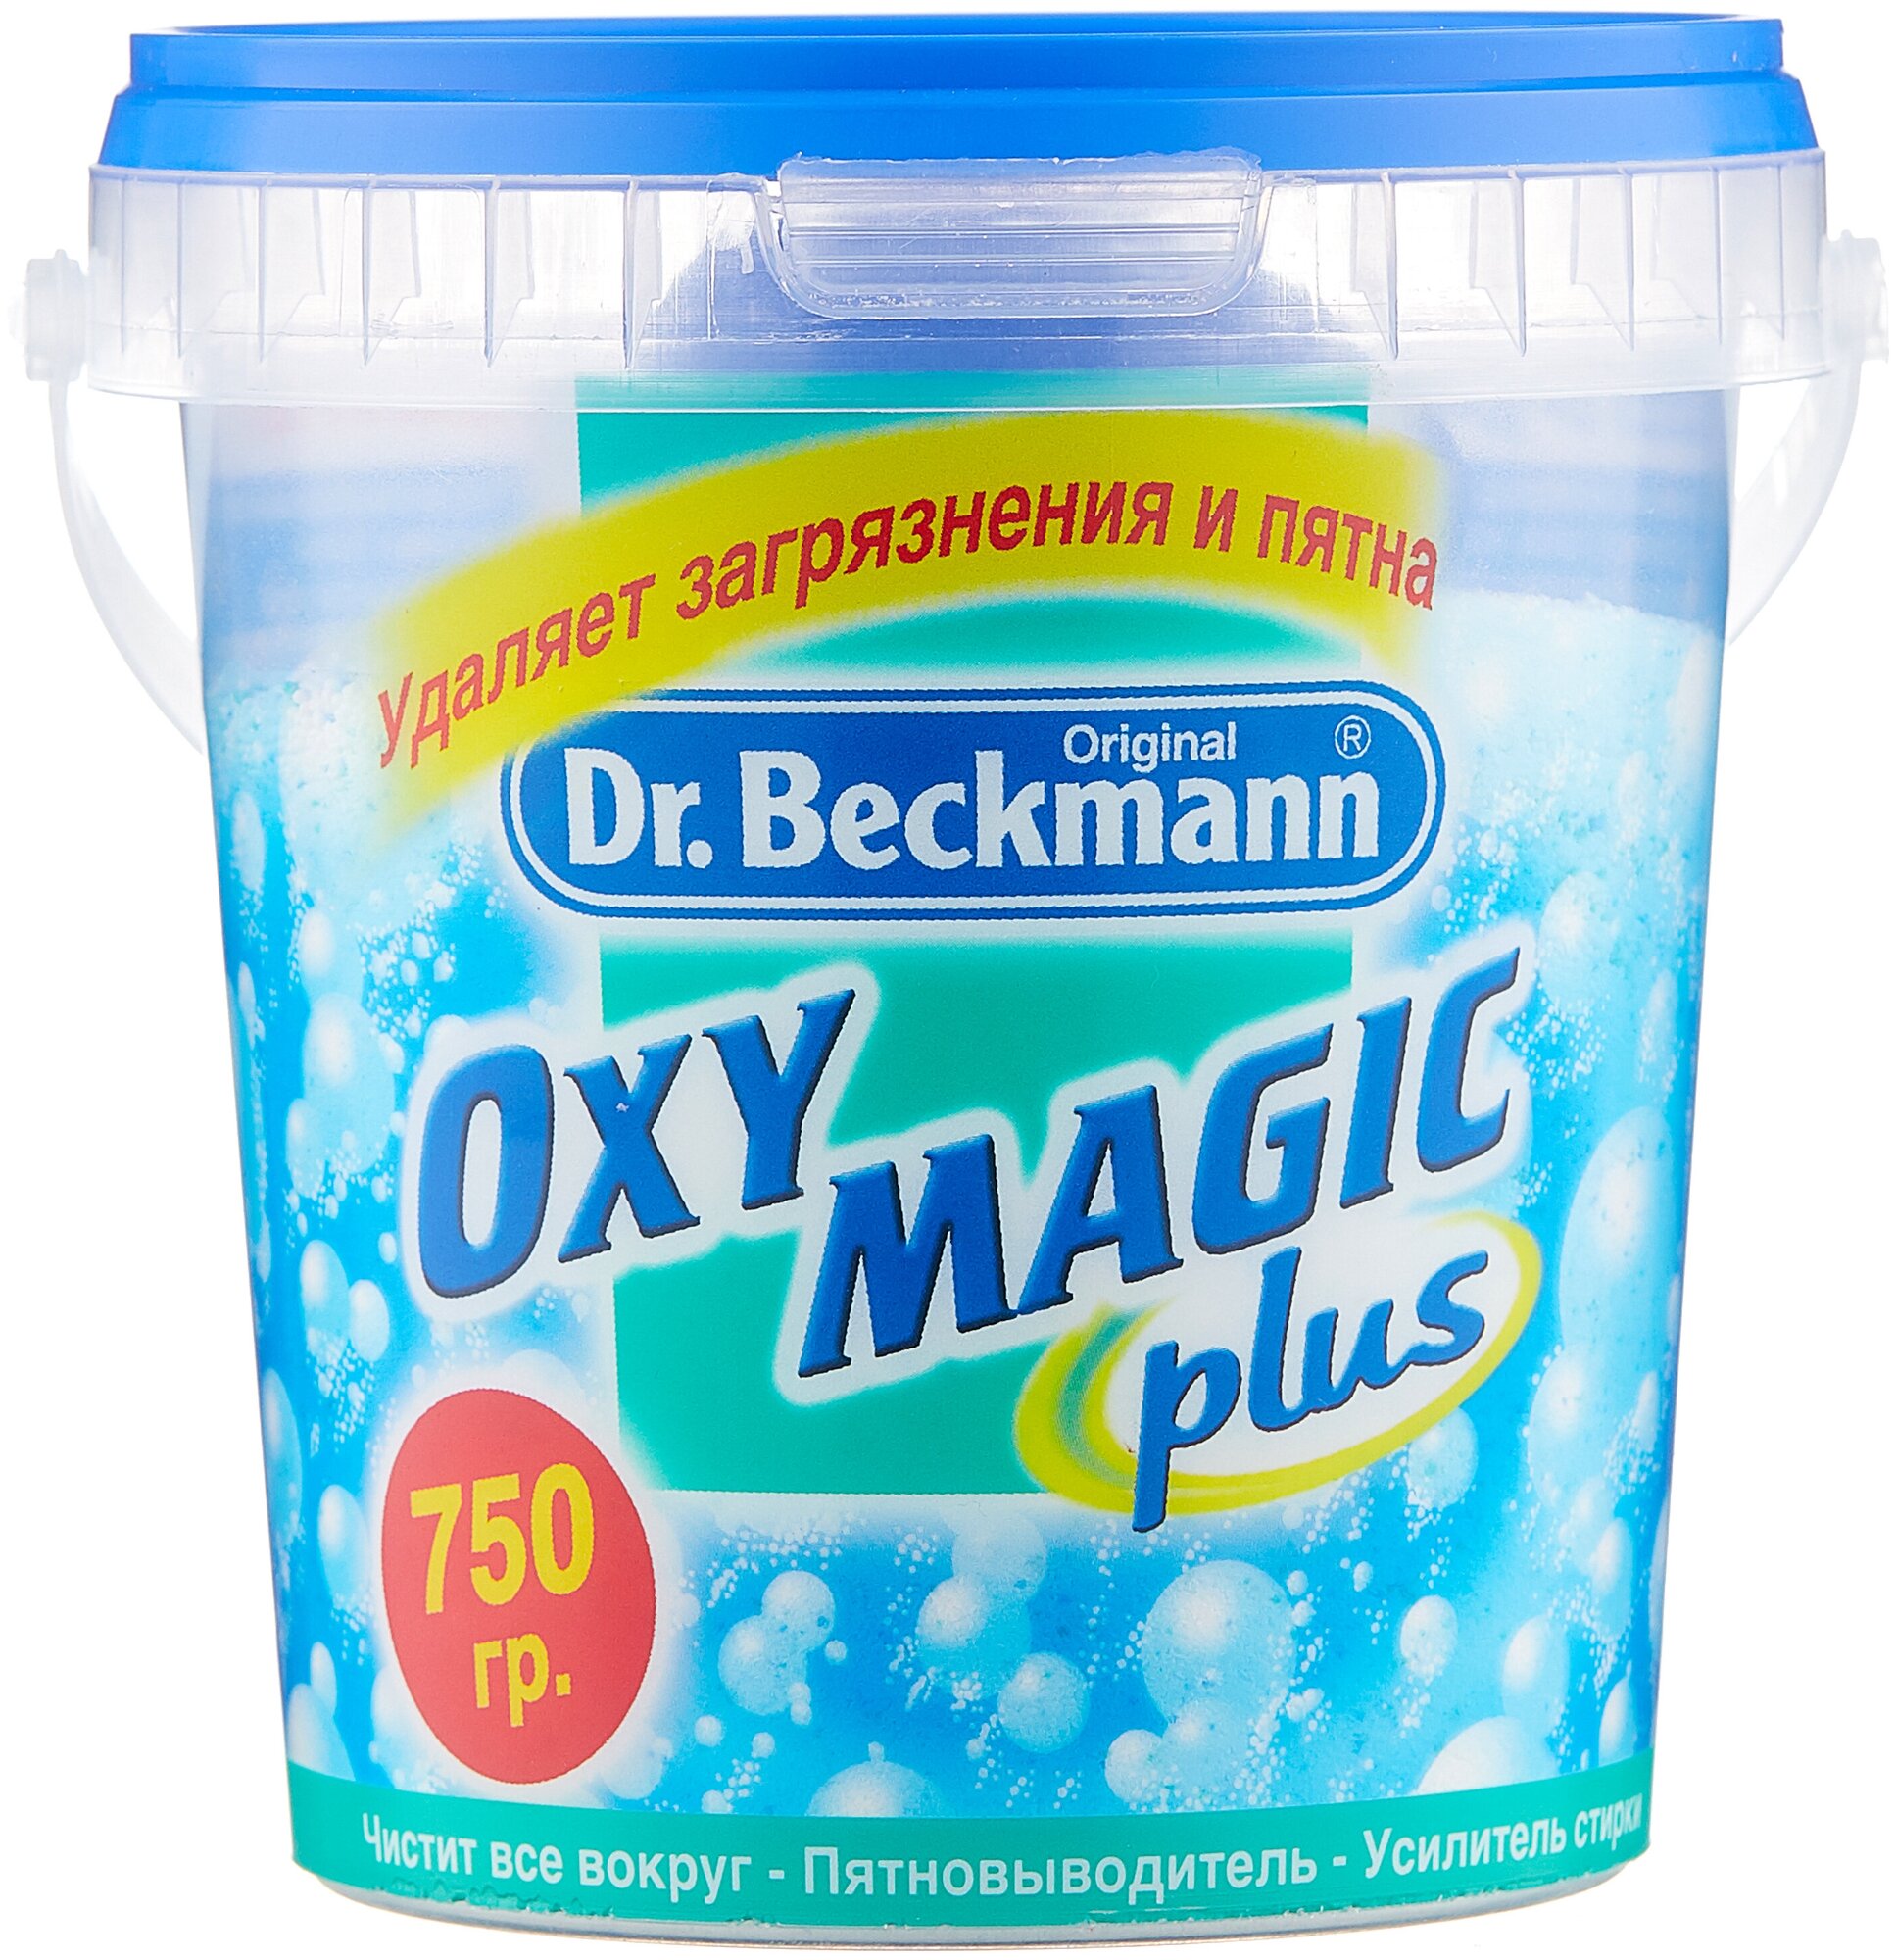 Пятновыводитель усилитель стирки Oxy magic plus, 1000г, Dr.Beckmann